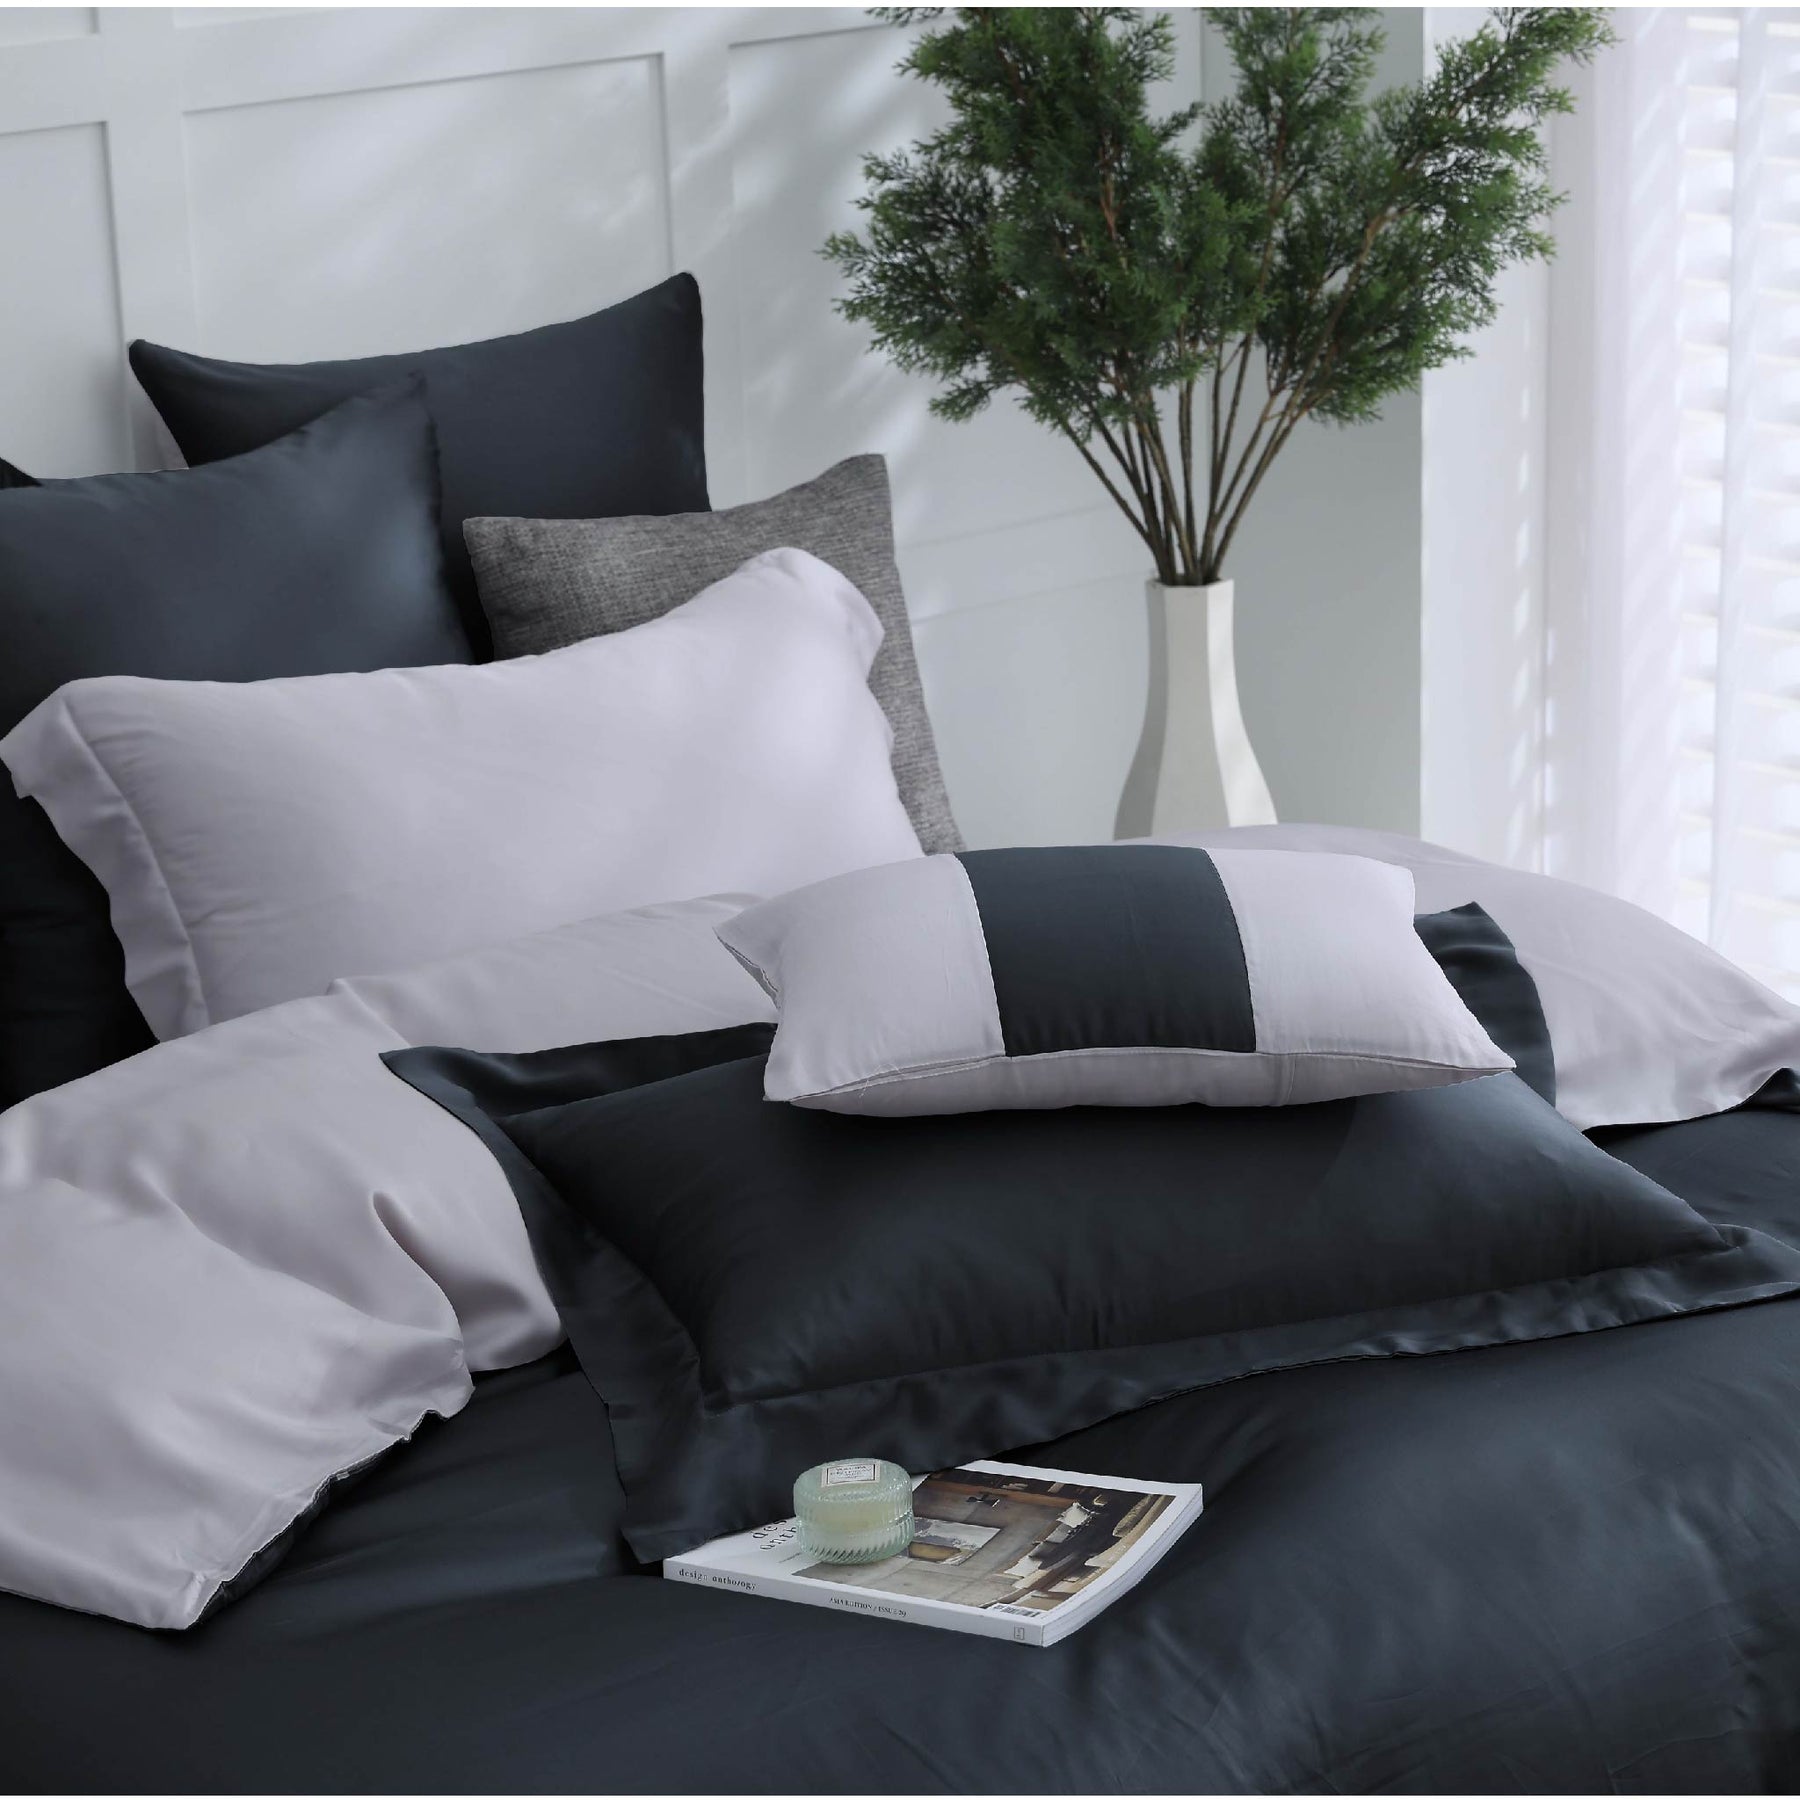 【IKEA歐規】60支天絲/IKEA歐規/床包枕套被套/素色系列